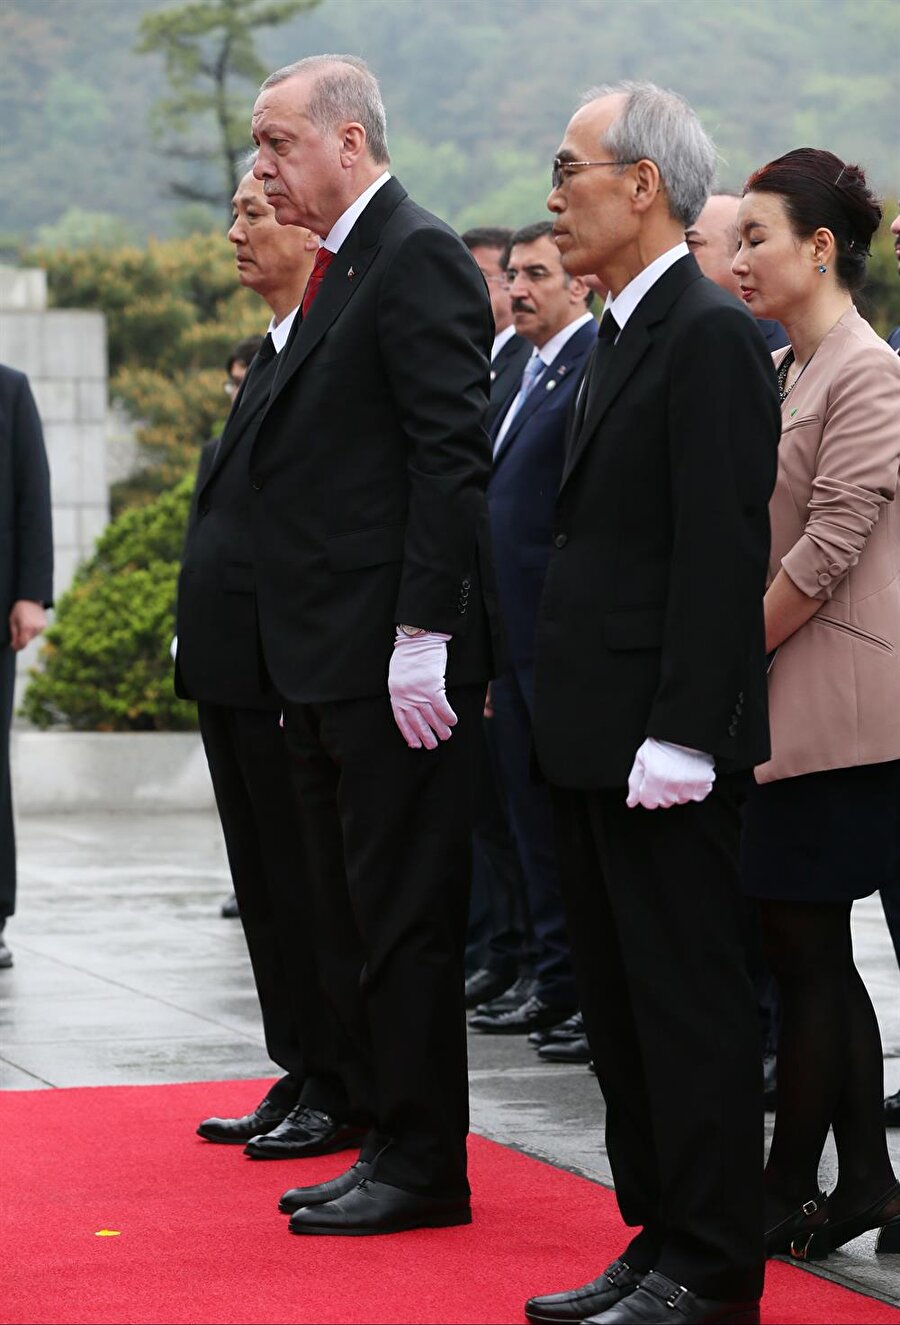 Törende, Cumhurbaşkanı Erdoğan ve beraberindeki Güney Koreli heyet de beyaz eldiven taktı.